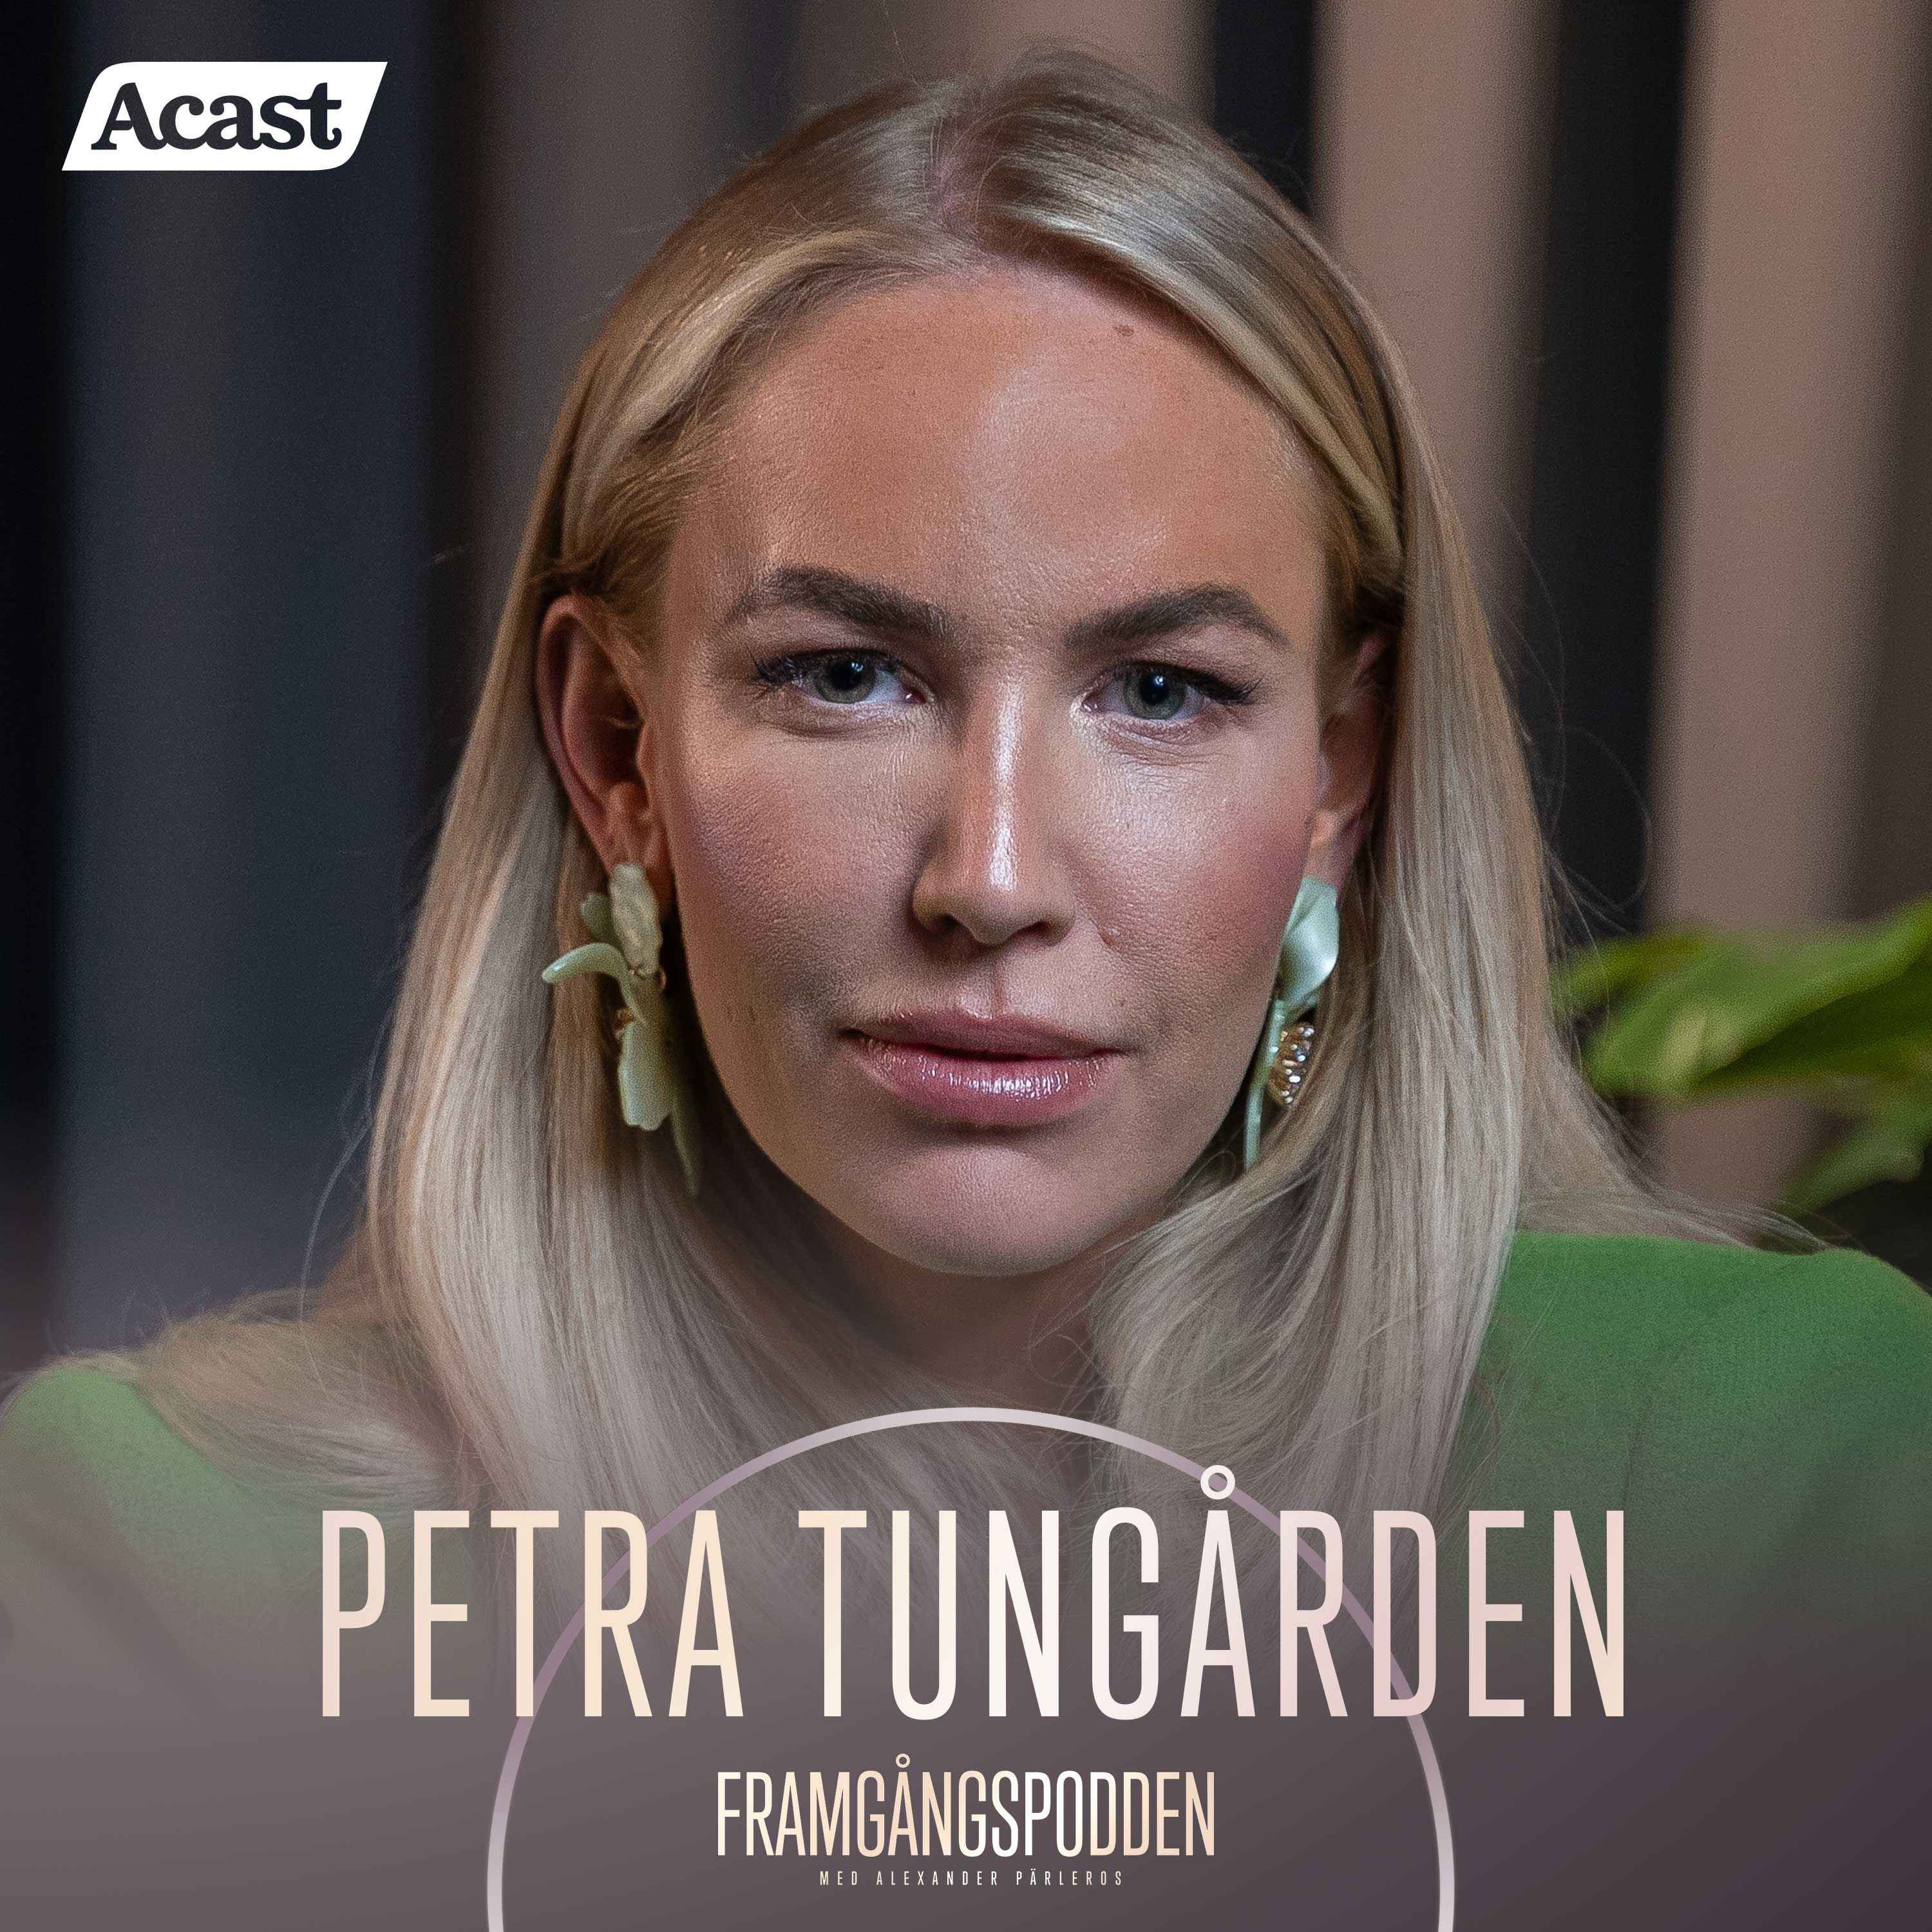 589. Petra Tungården - Om Adoores framgångssaga, marketing & föräldraskapet, Original